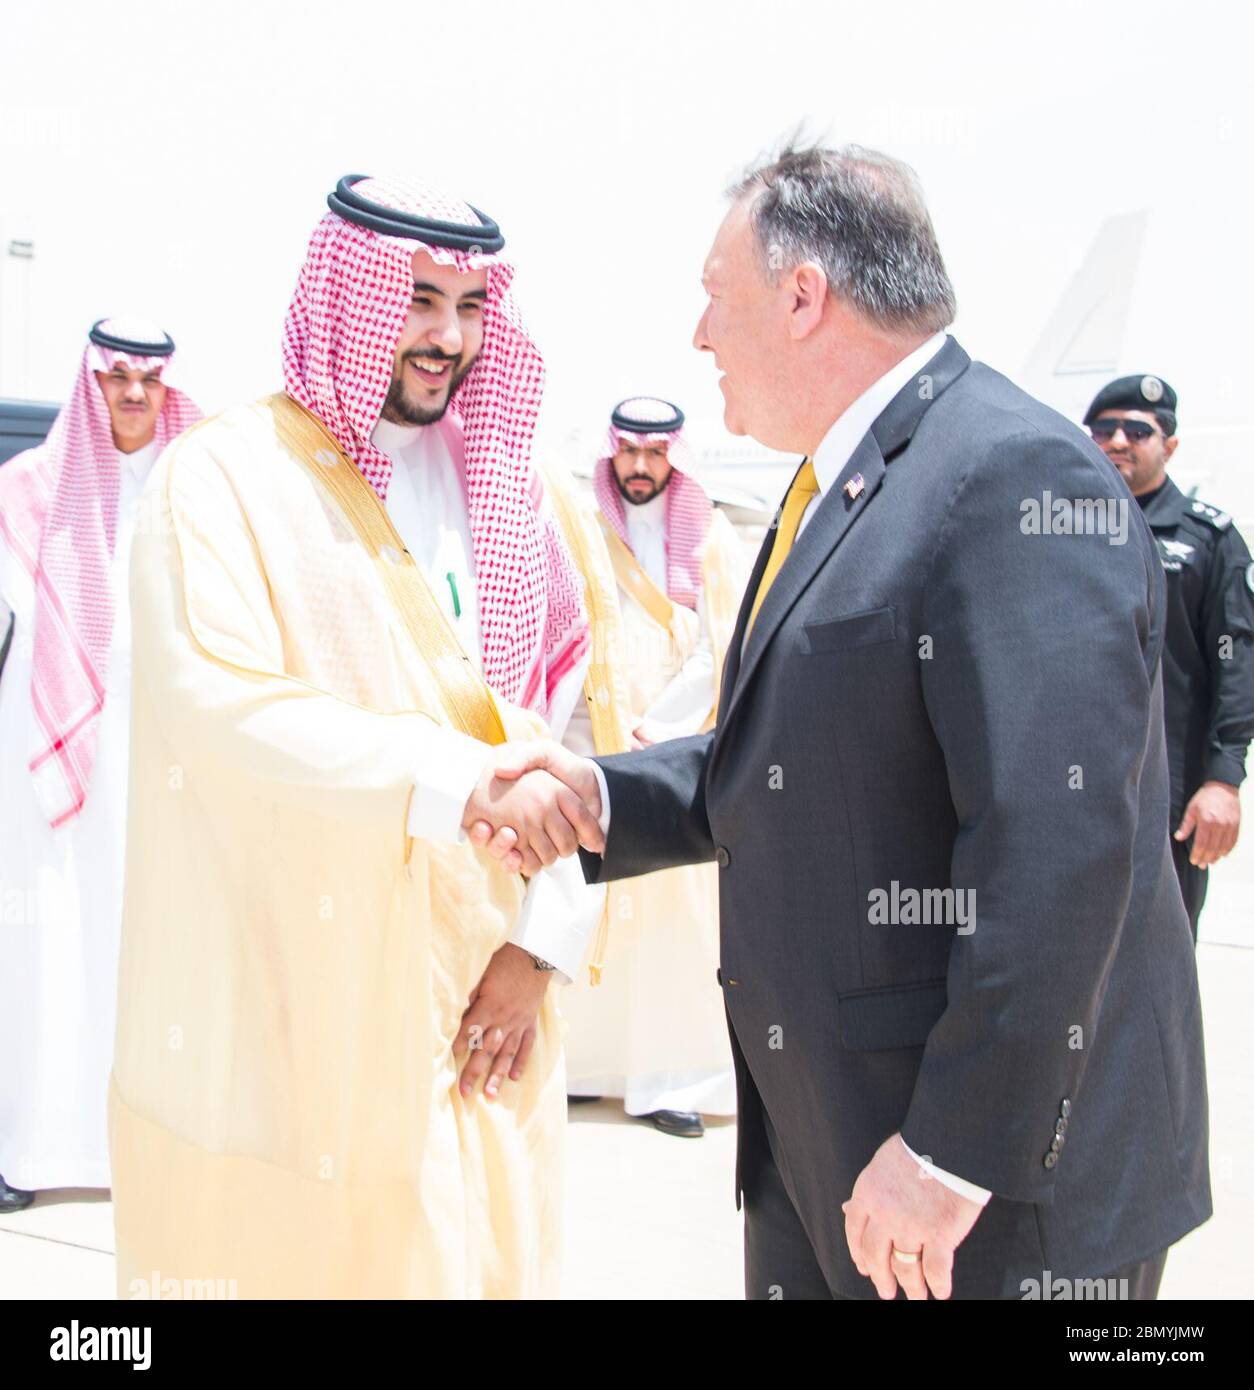 Le secrétaire Pompeo quitte l'Arabie saoudite le secrétaire d'État américain Mike Pompeo a dit au revoir à l'ambassadeur d'Arabie saoudite aux États-Unis l'ambassadeur d'Arabie saoudite aux États-Unis Khalid bin Salman, alors qu'il quitte Riyad, en Arabie Saoudite, le 29 avril 2018, après des réunions avec des représentants du gouvernement saoudien. Banque D'Images